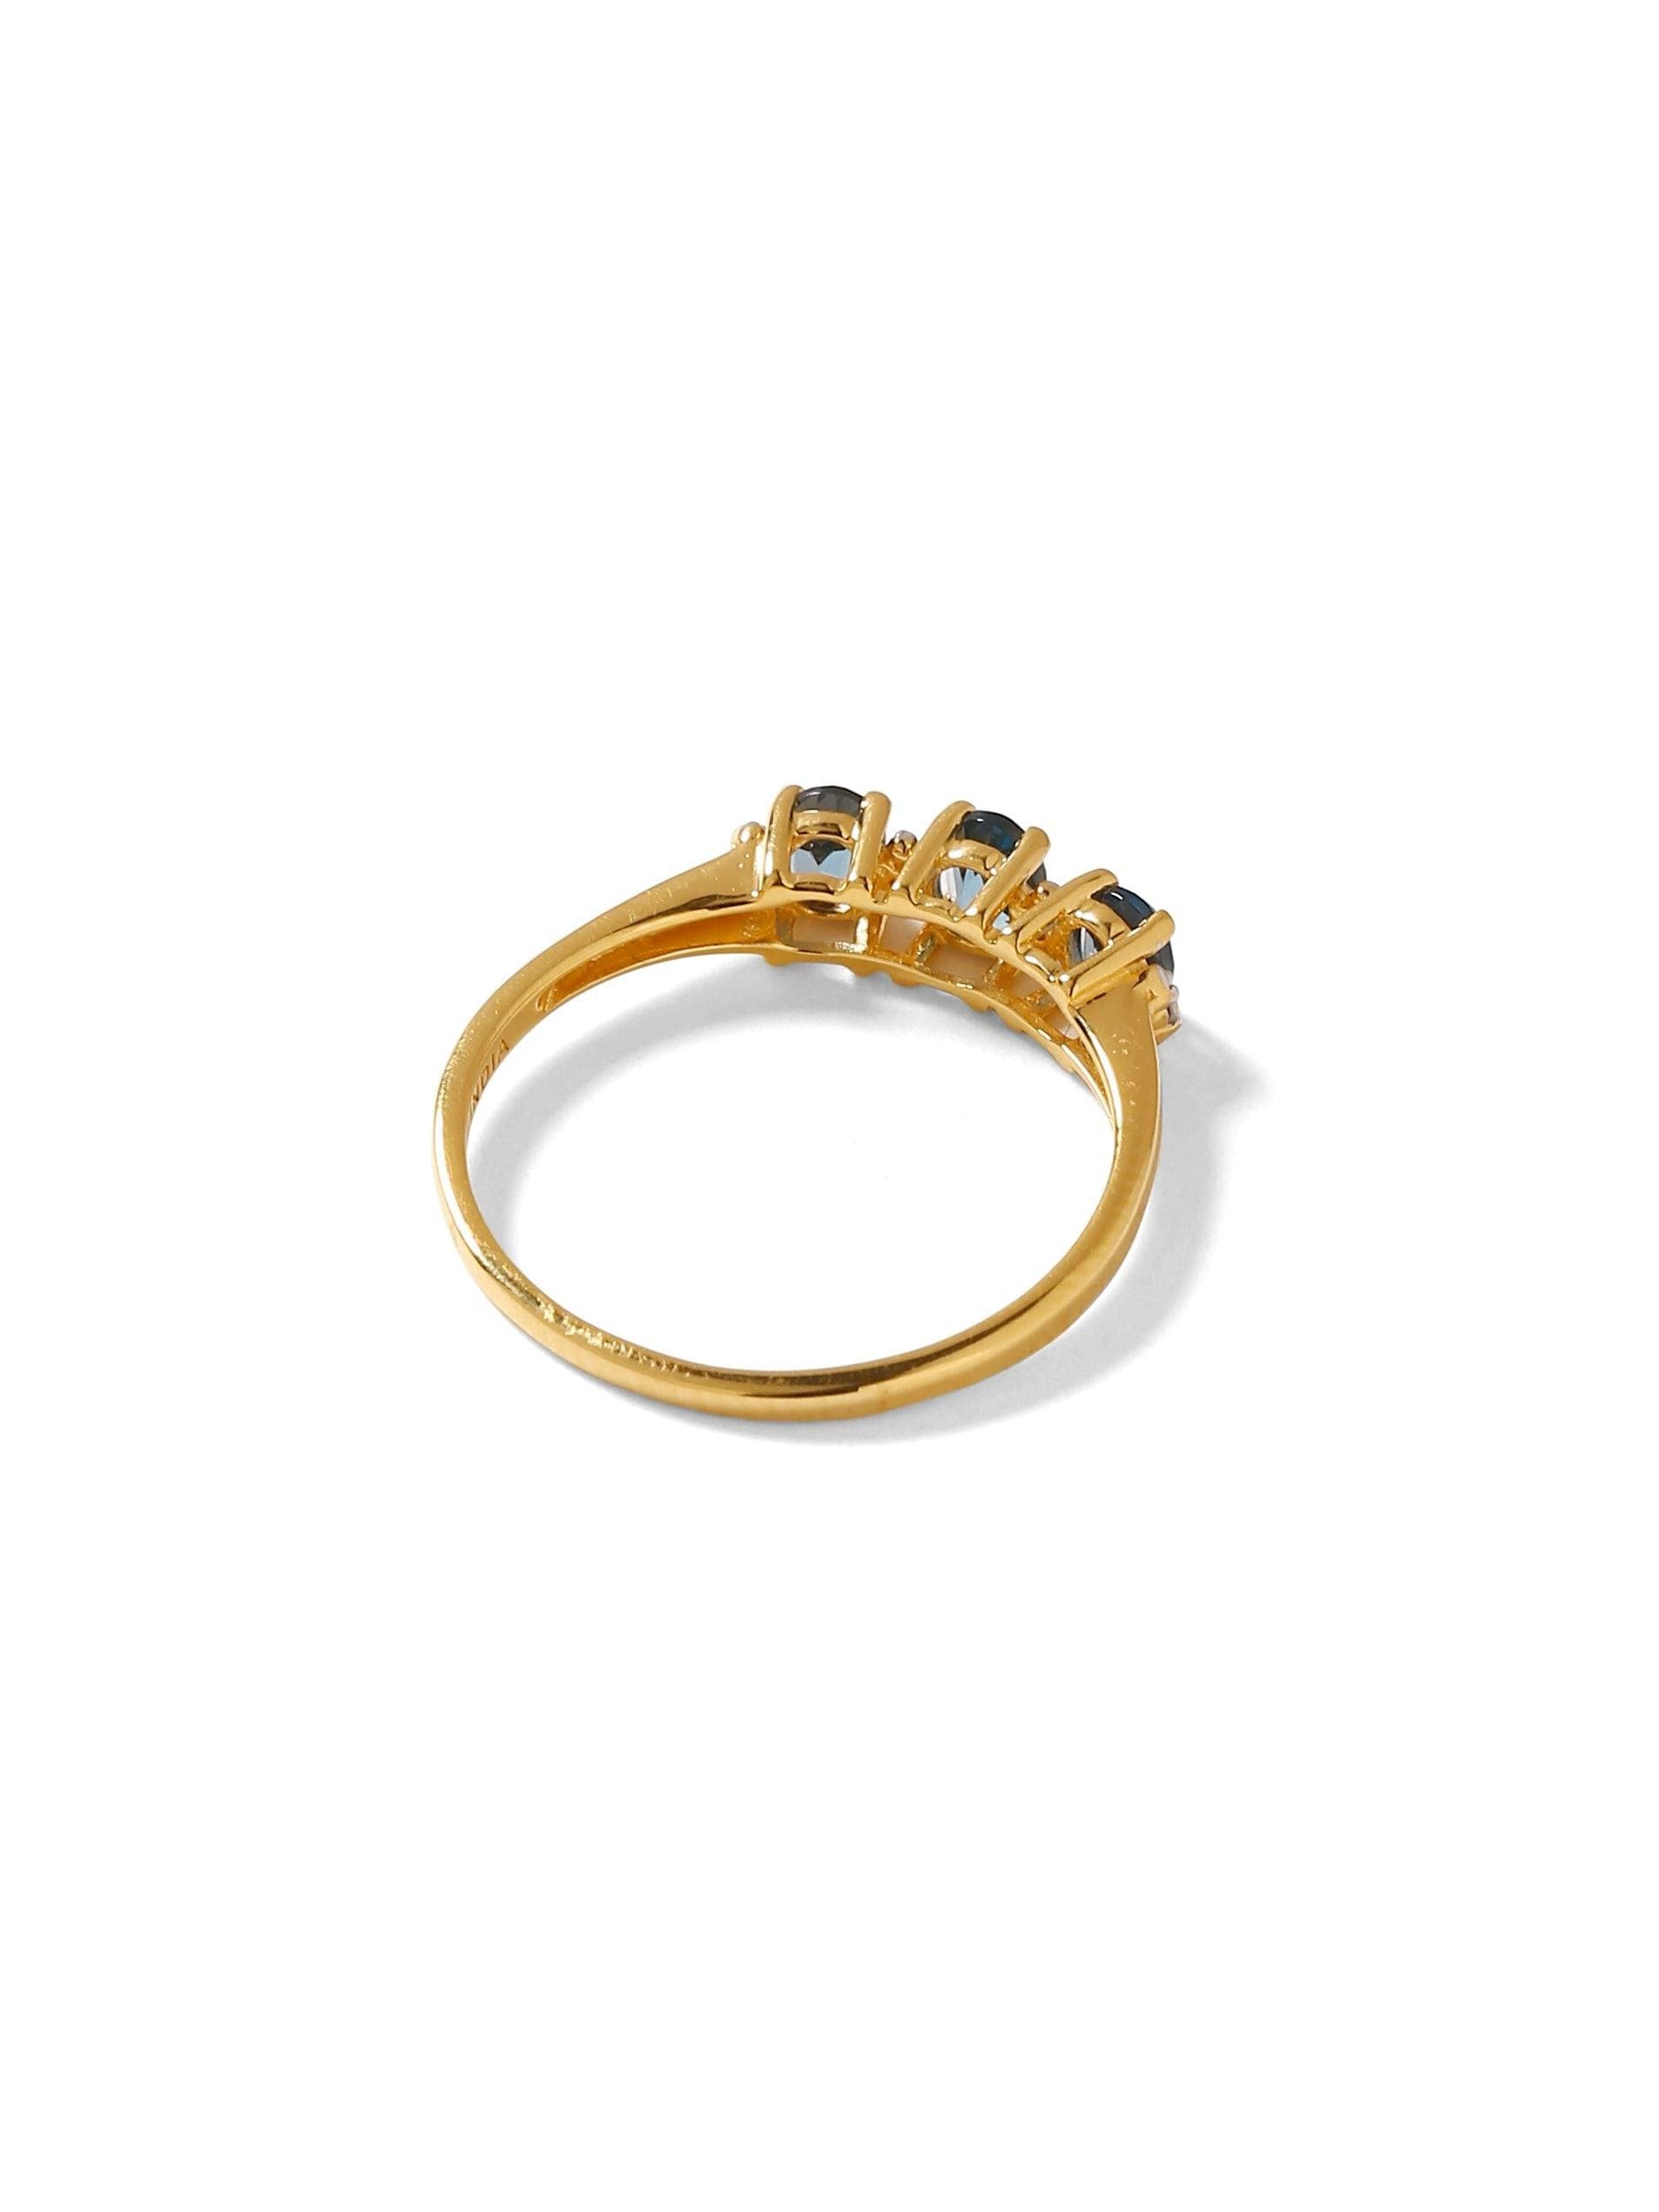 0.46 Ct. Tanzanite Solid 10k Yellow Gold Ring Jewelry - YoTreasure